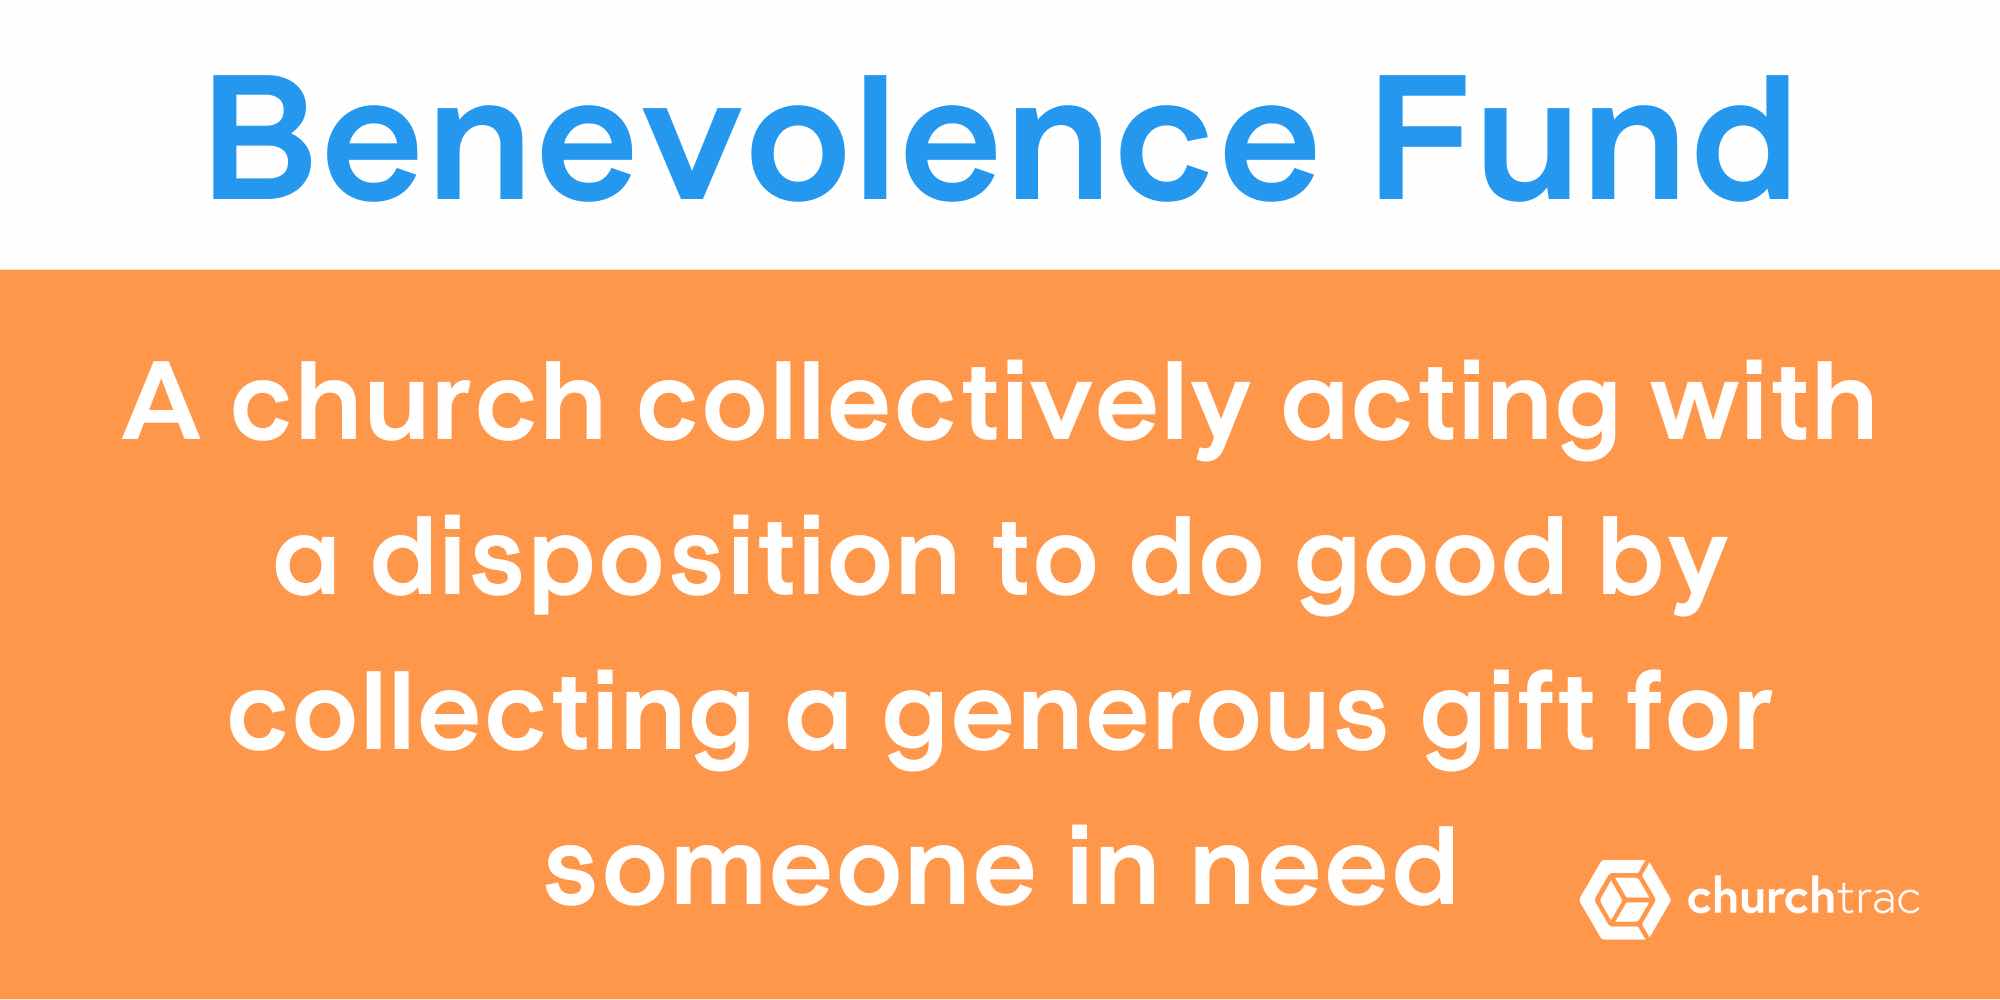 Benevolence Fund definition